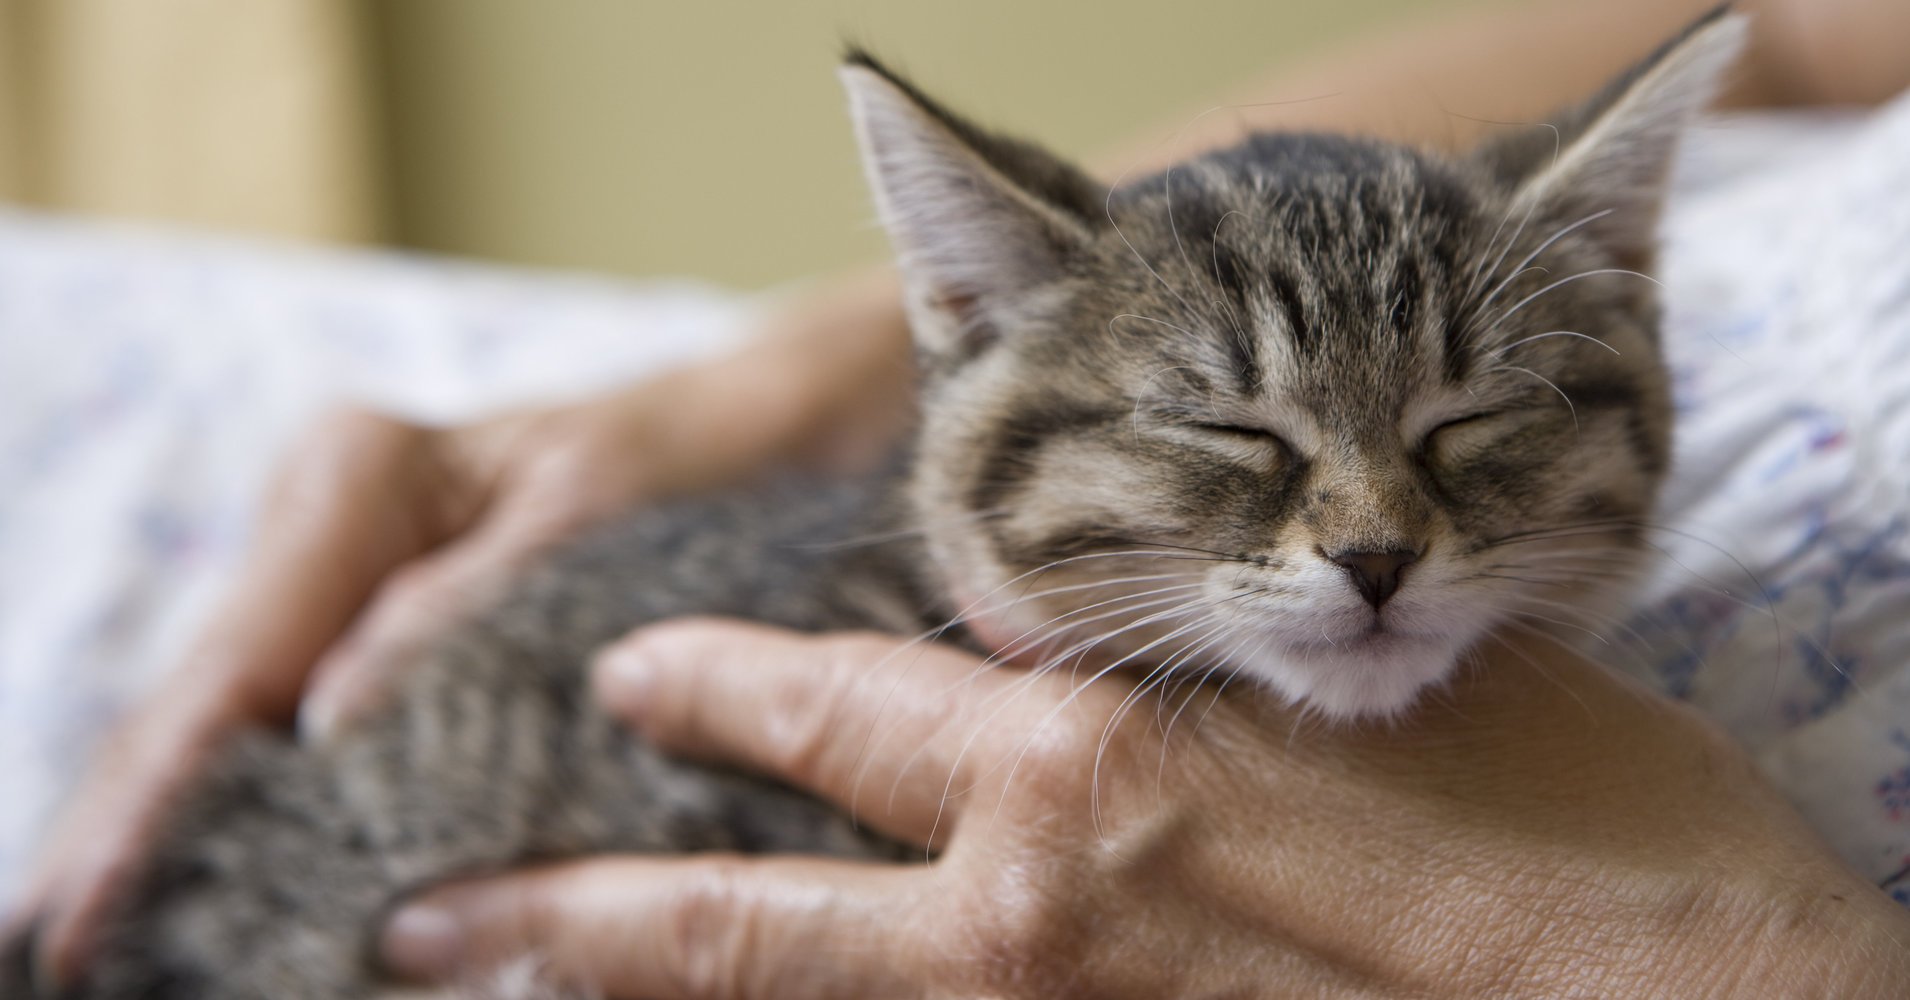 a.jpeg?resize=412,232 - Une clinique vétérinaire irlandaise a mis une offre d'emploi pour la profession de 'câlineur de chat'